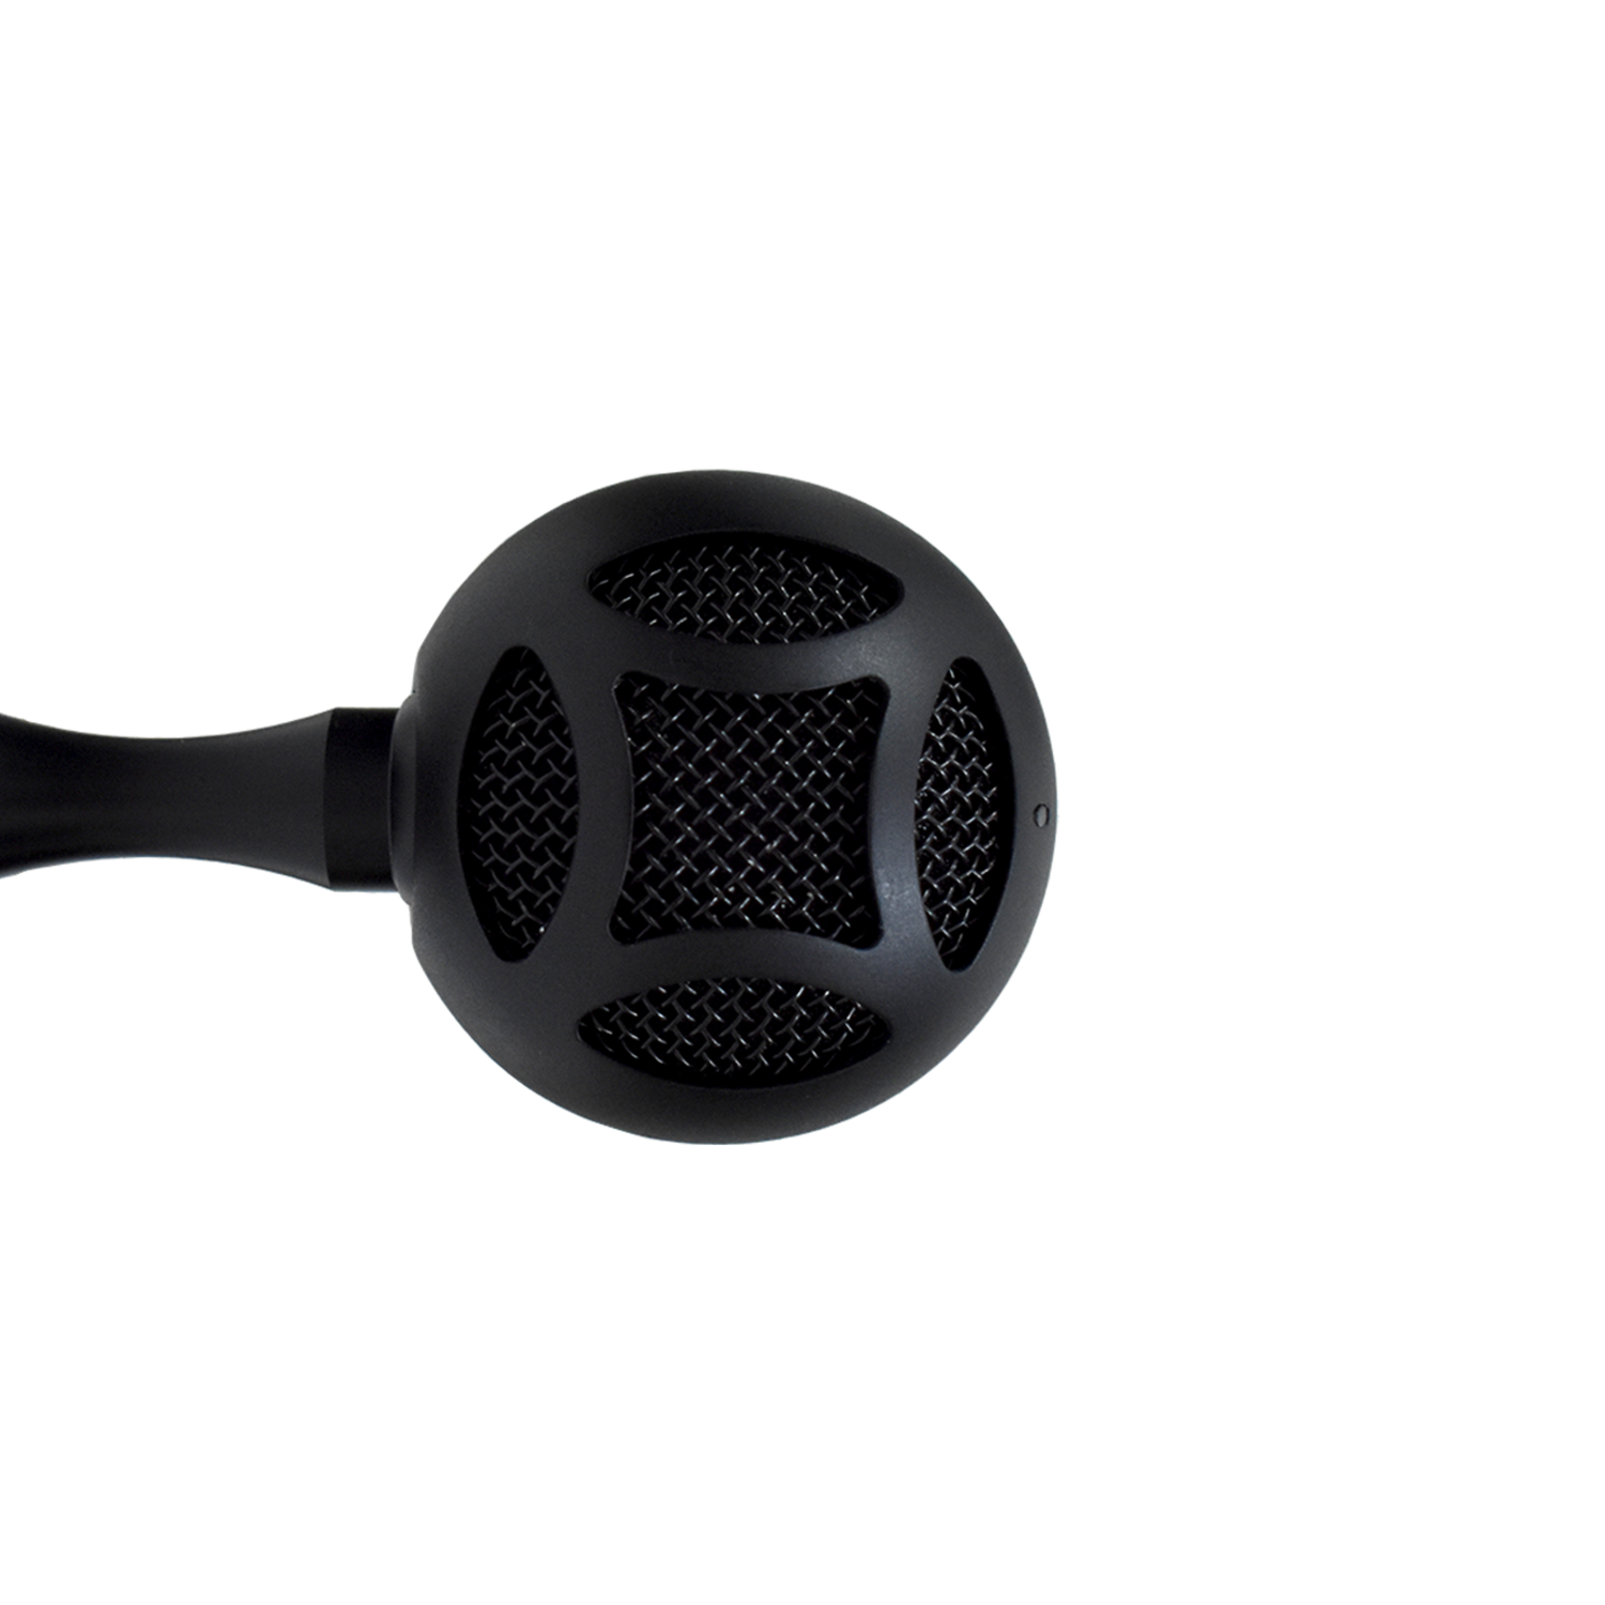 CSUM06 - Black - Mini USB Microphone - Detailshot 1